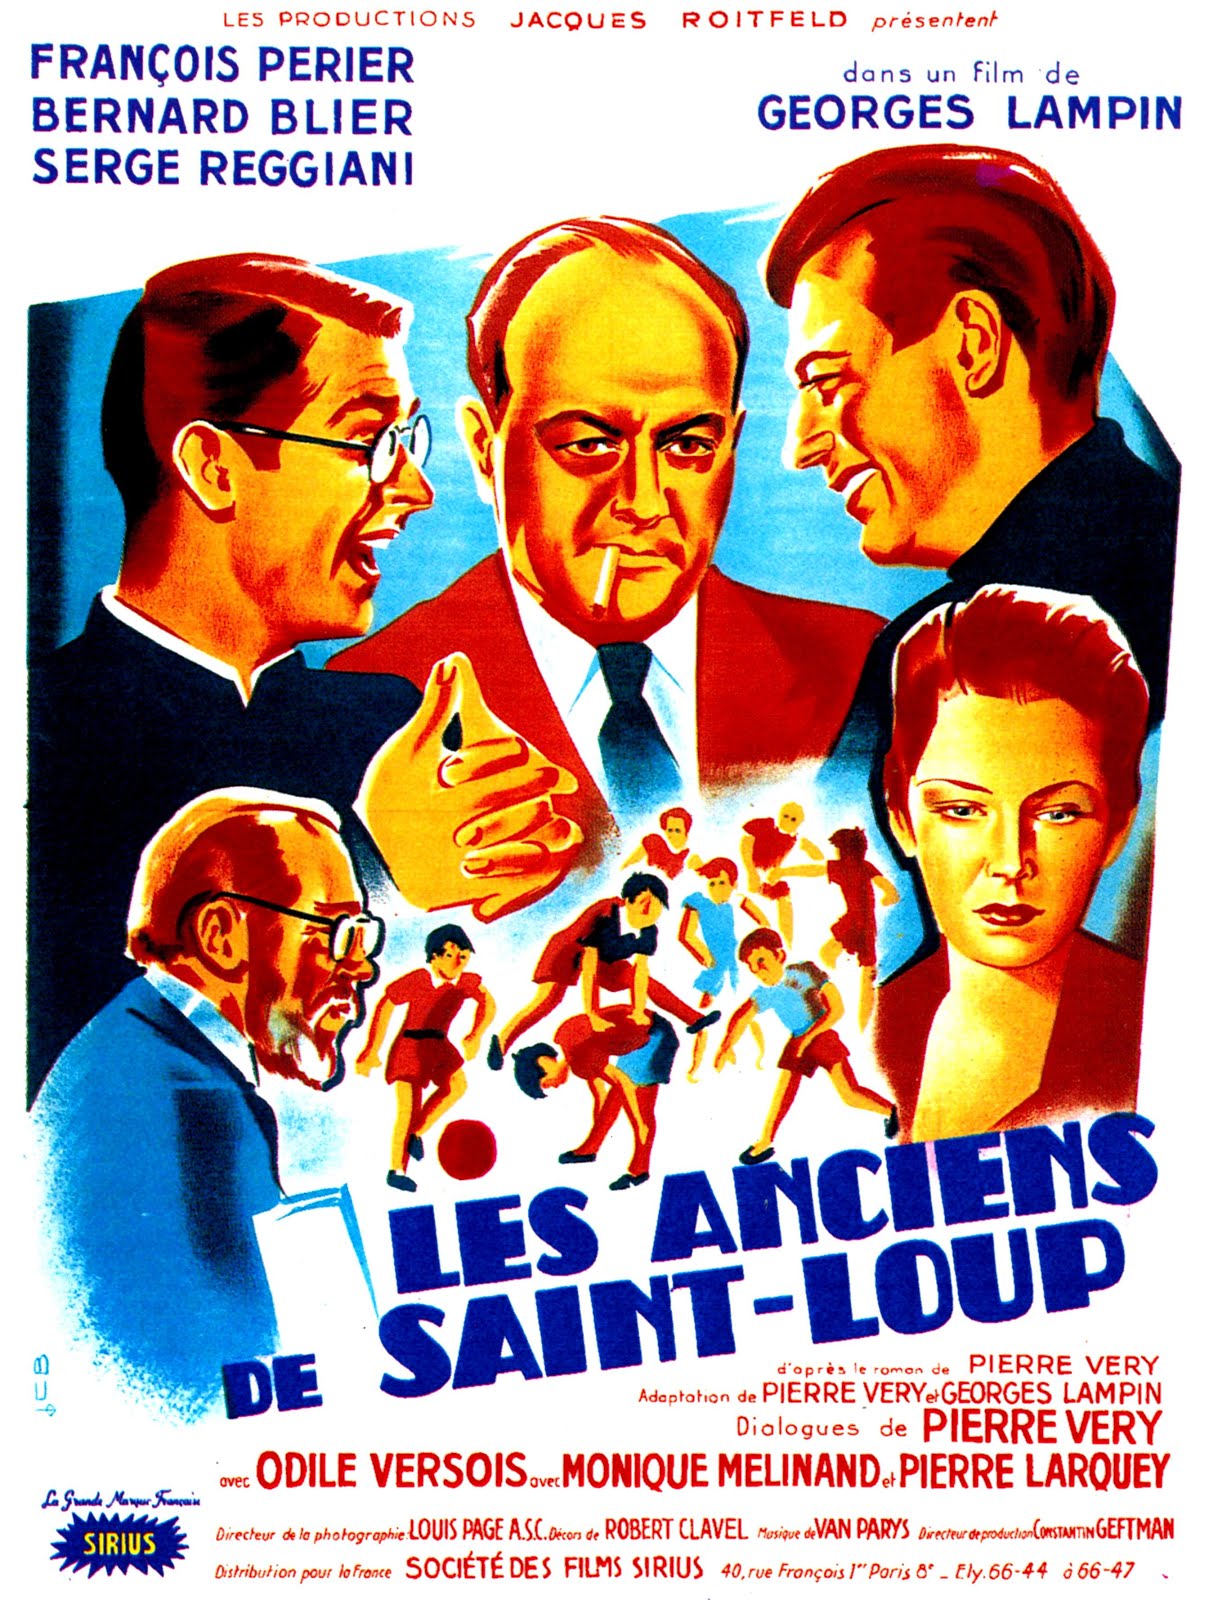 Les anciens de Saint-Loup (1950) Georges Lampin - Les anciens de Saint-Loup